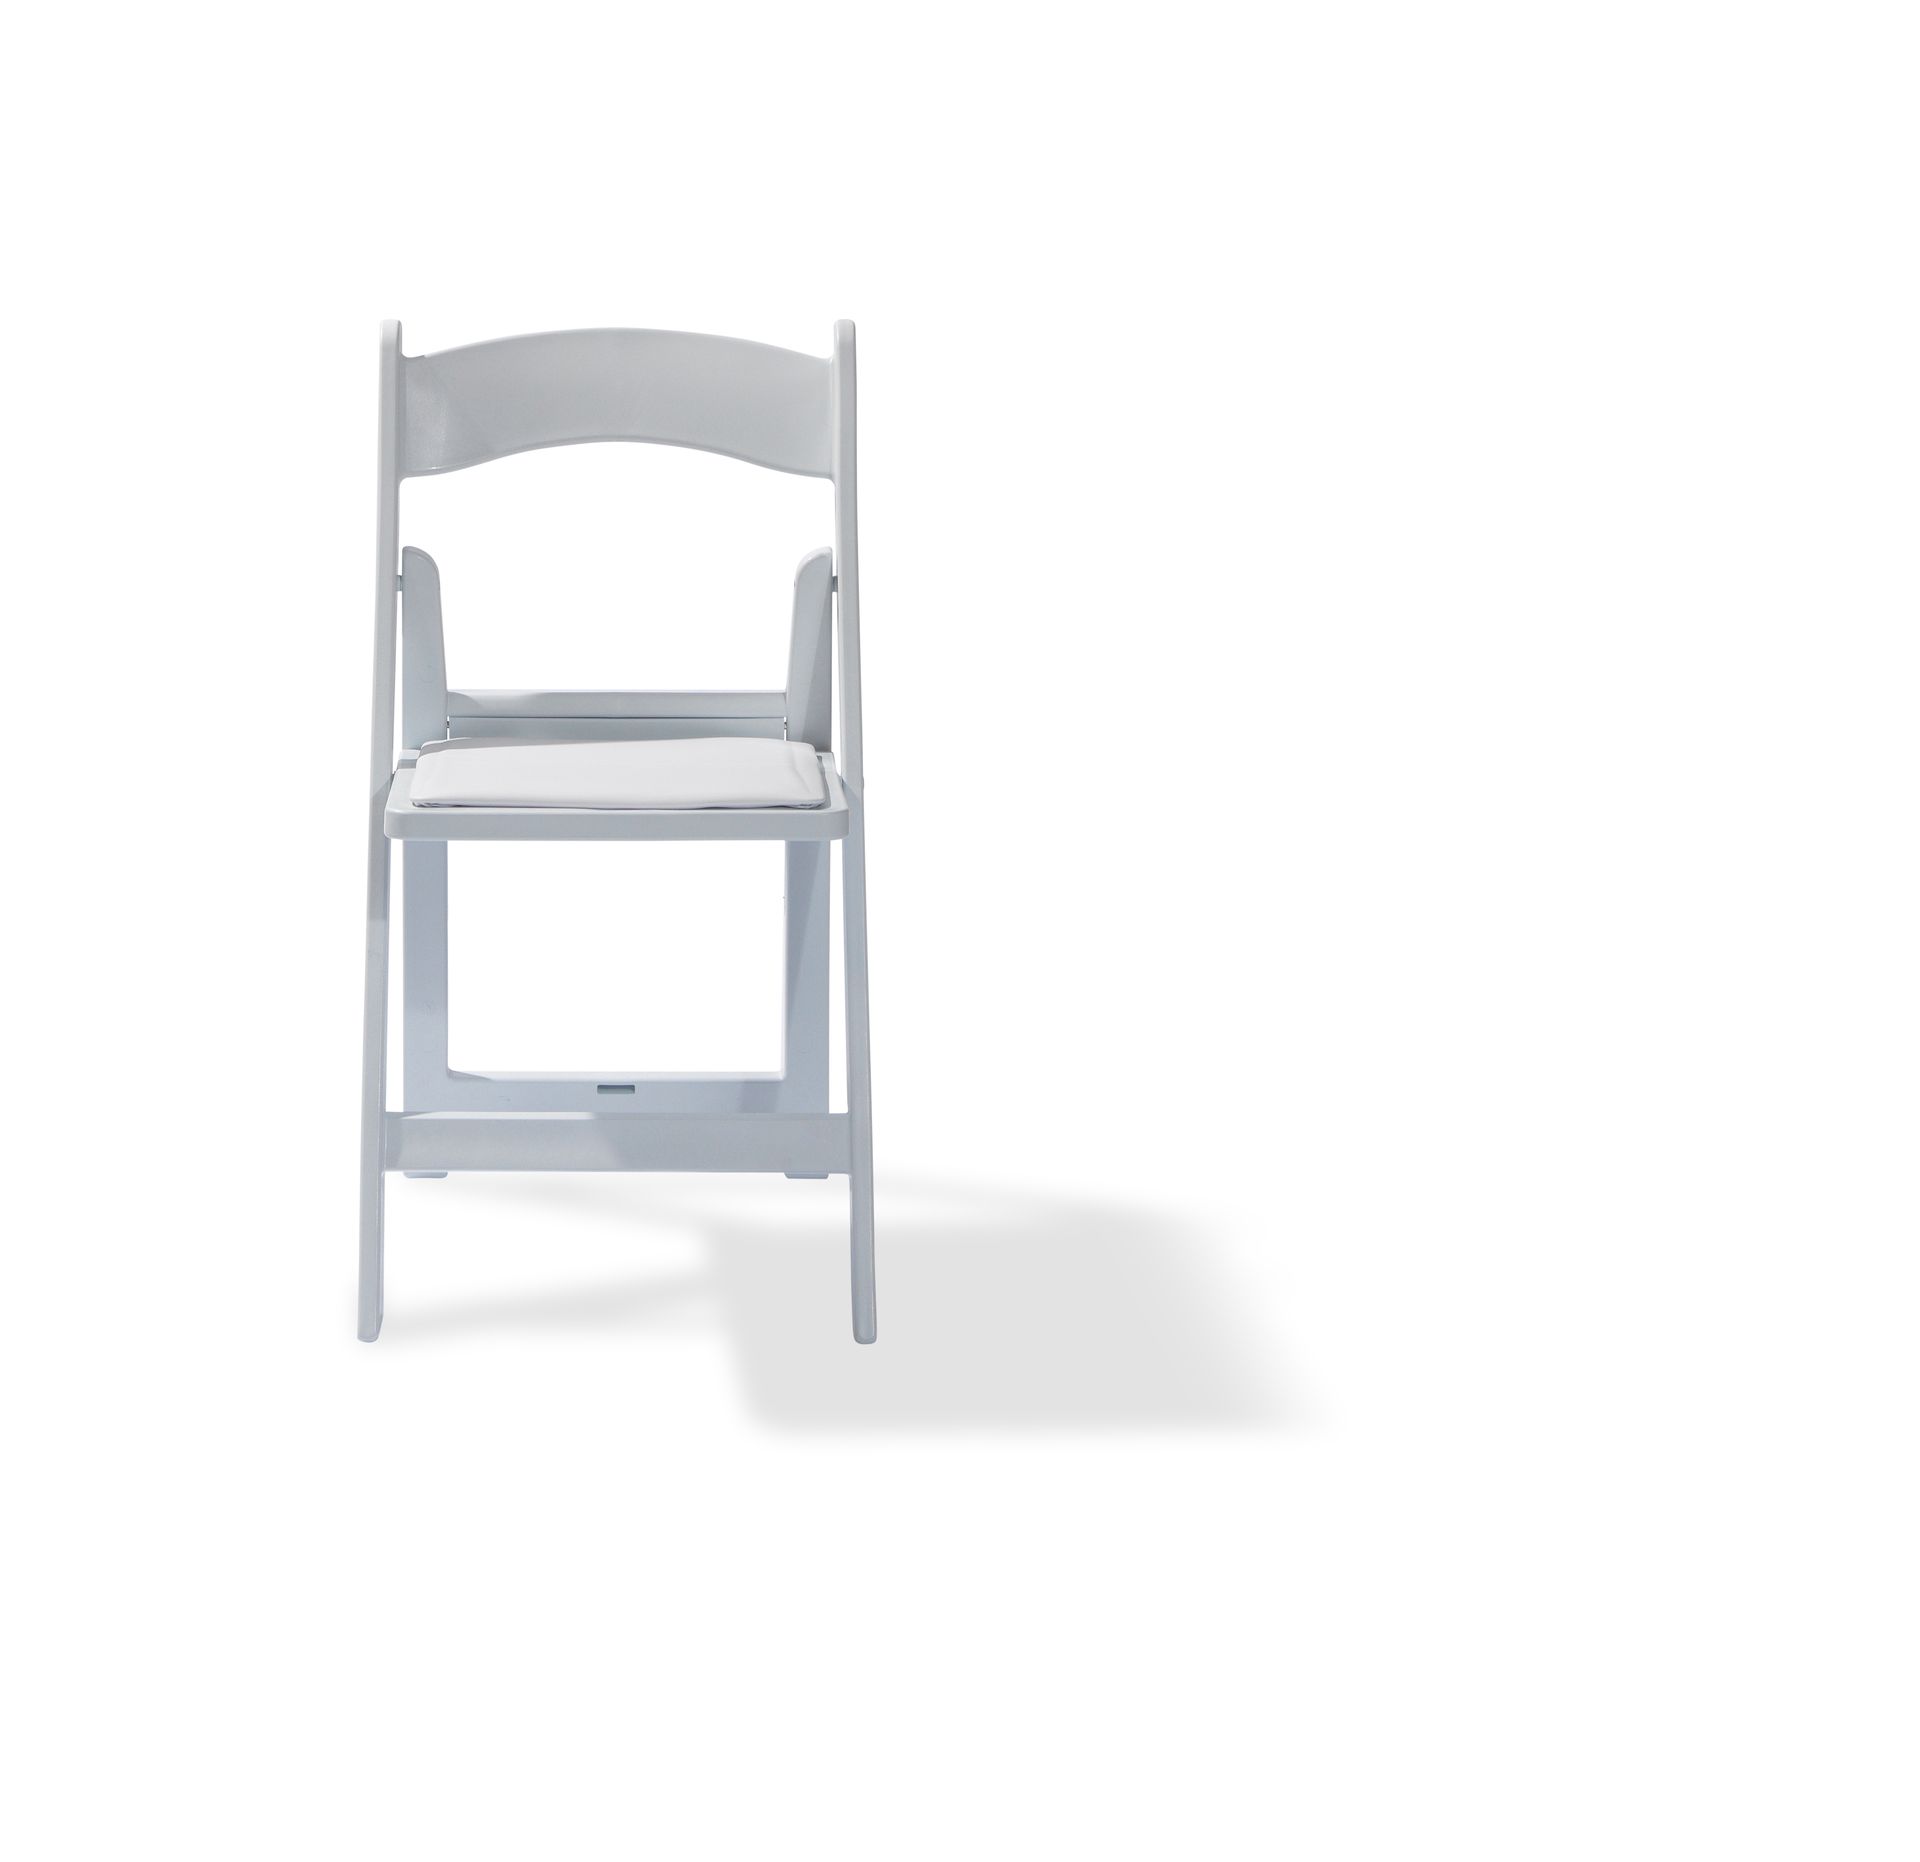 Chaise de mariage pliable en polypropylène, Blanc, siège rembourré en cuir synthétique, 45x45x78cm (BxTxH), 50220